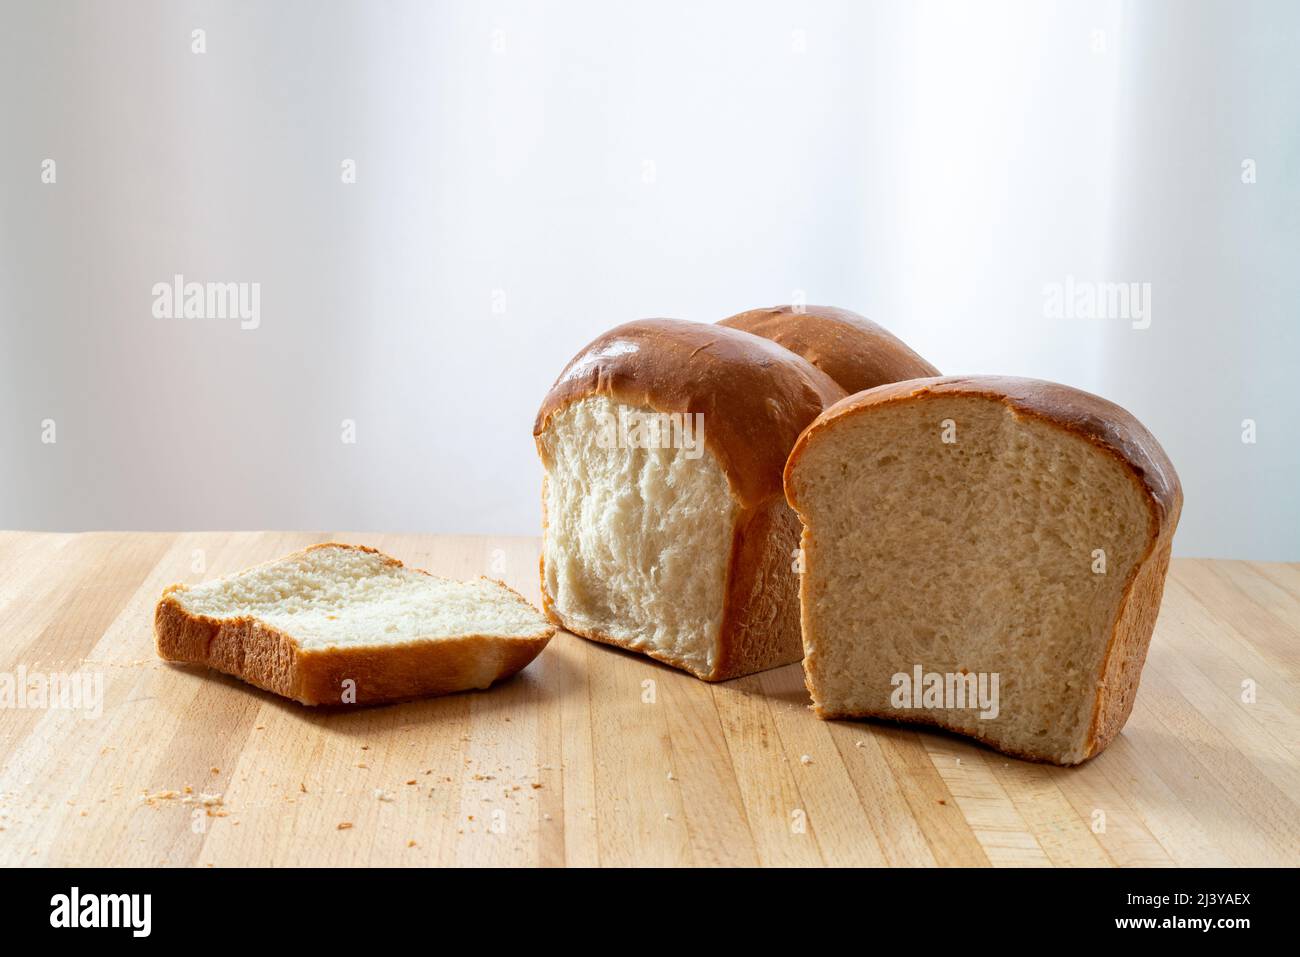 Ein einziger Laib frisches Weißbrot auf einem hölzernen Schneidebrett in einer Küche. Das warme knusprige Brötchen hat Butter über dem knusprigen Brot geschmolzen. Das Brötchen wird geschnitten Stockfoto